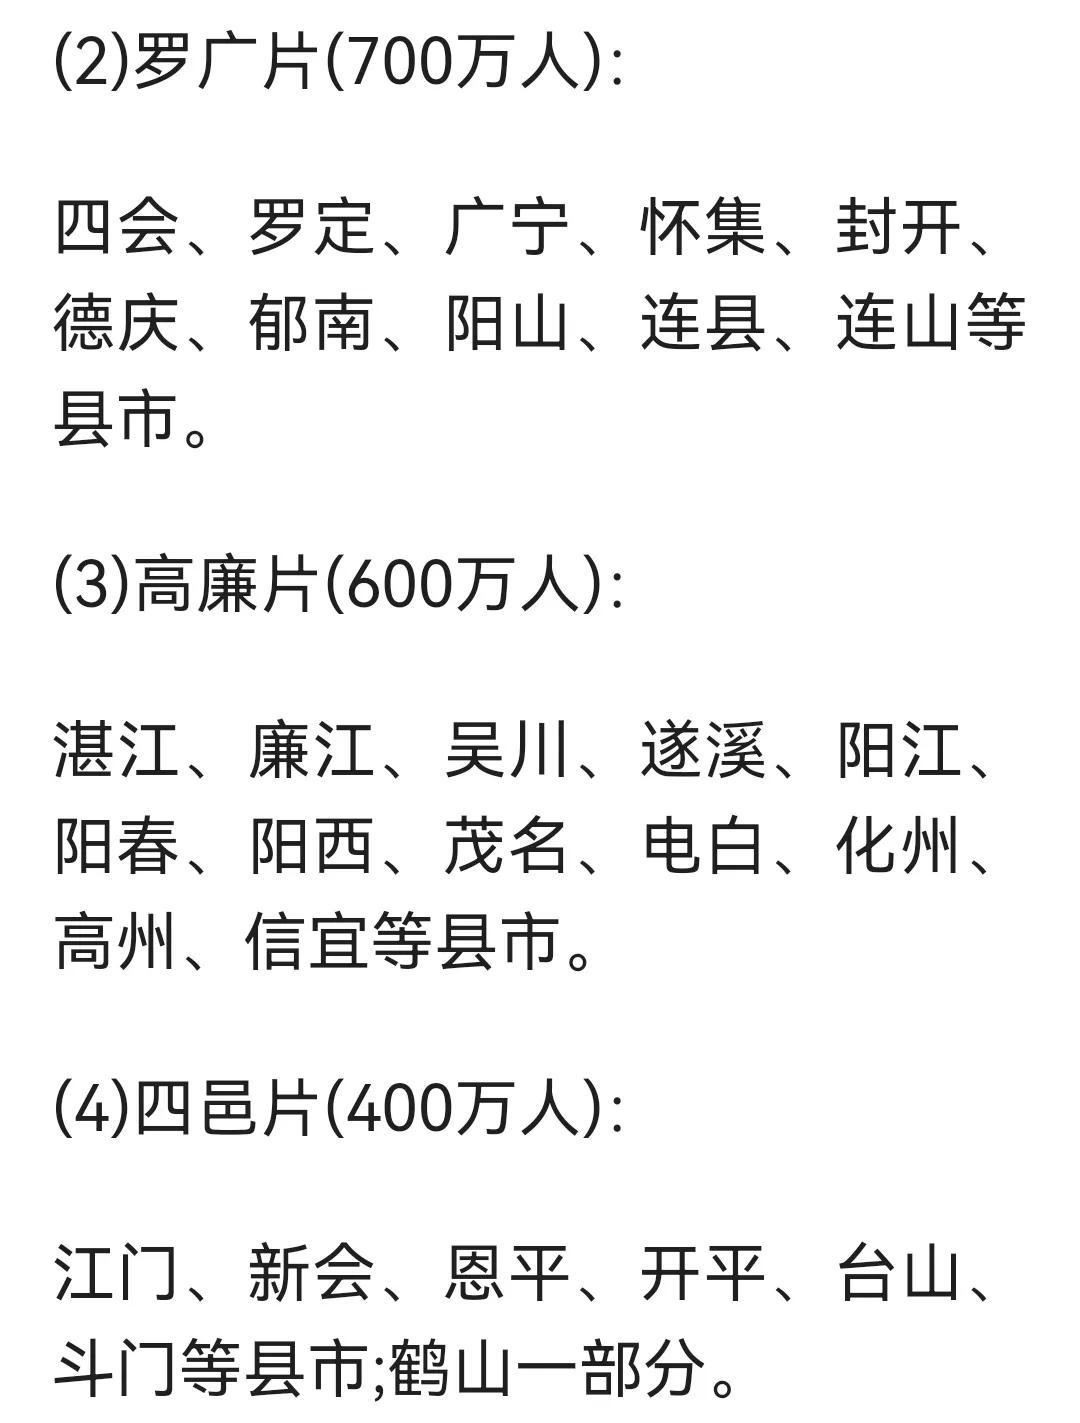 广东省主要语言(方言)有三种,即粤语,客家话,潮汕方言